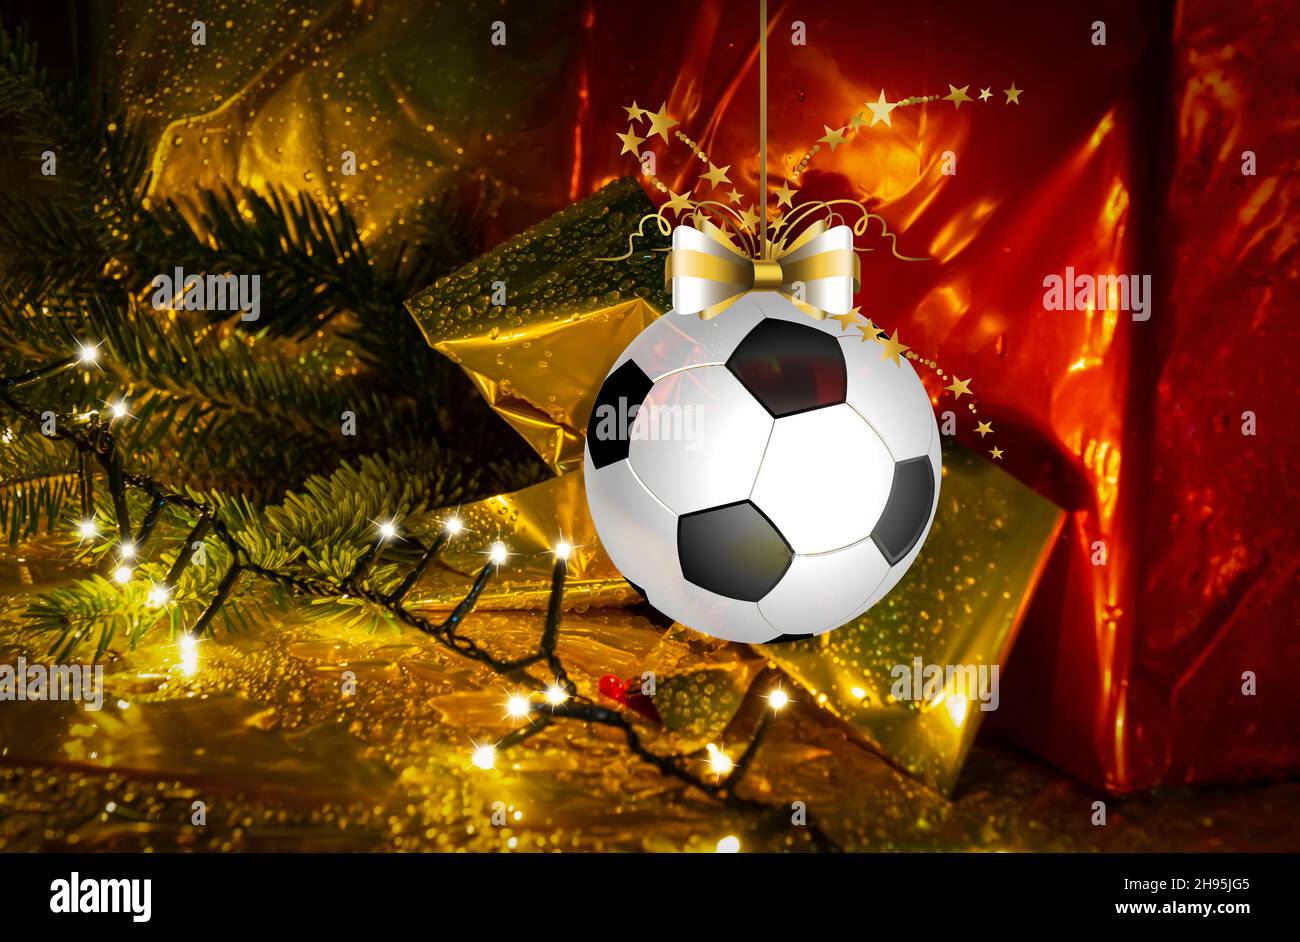 Fußball-weihnachtskugel, die vor einem beleuchteten goldenen und roten Geschenkhintergrund hängt. Weihnachtskarte für Grüße Stockfoto